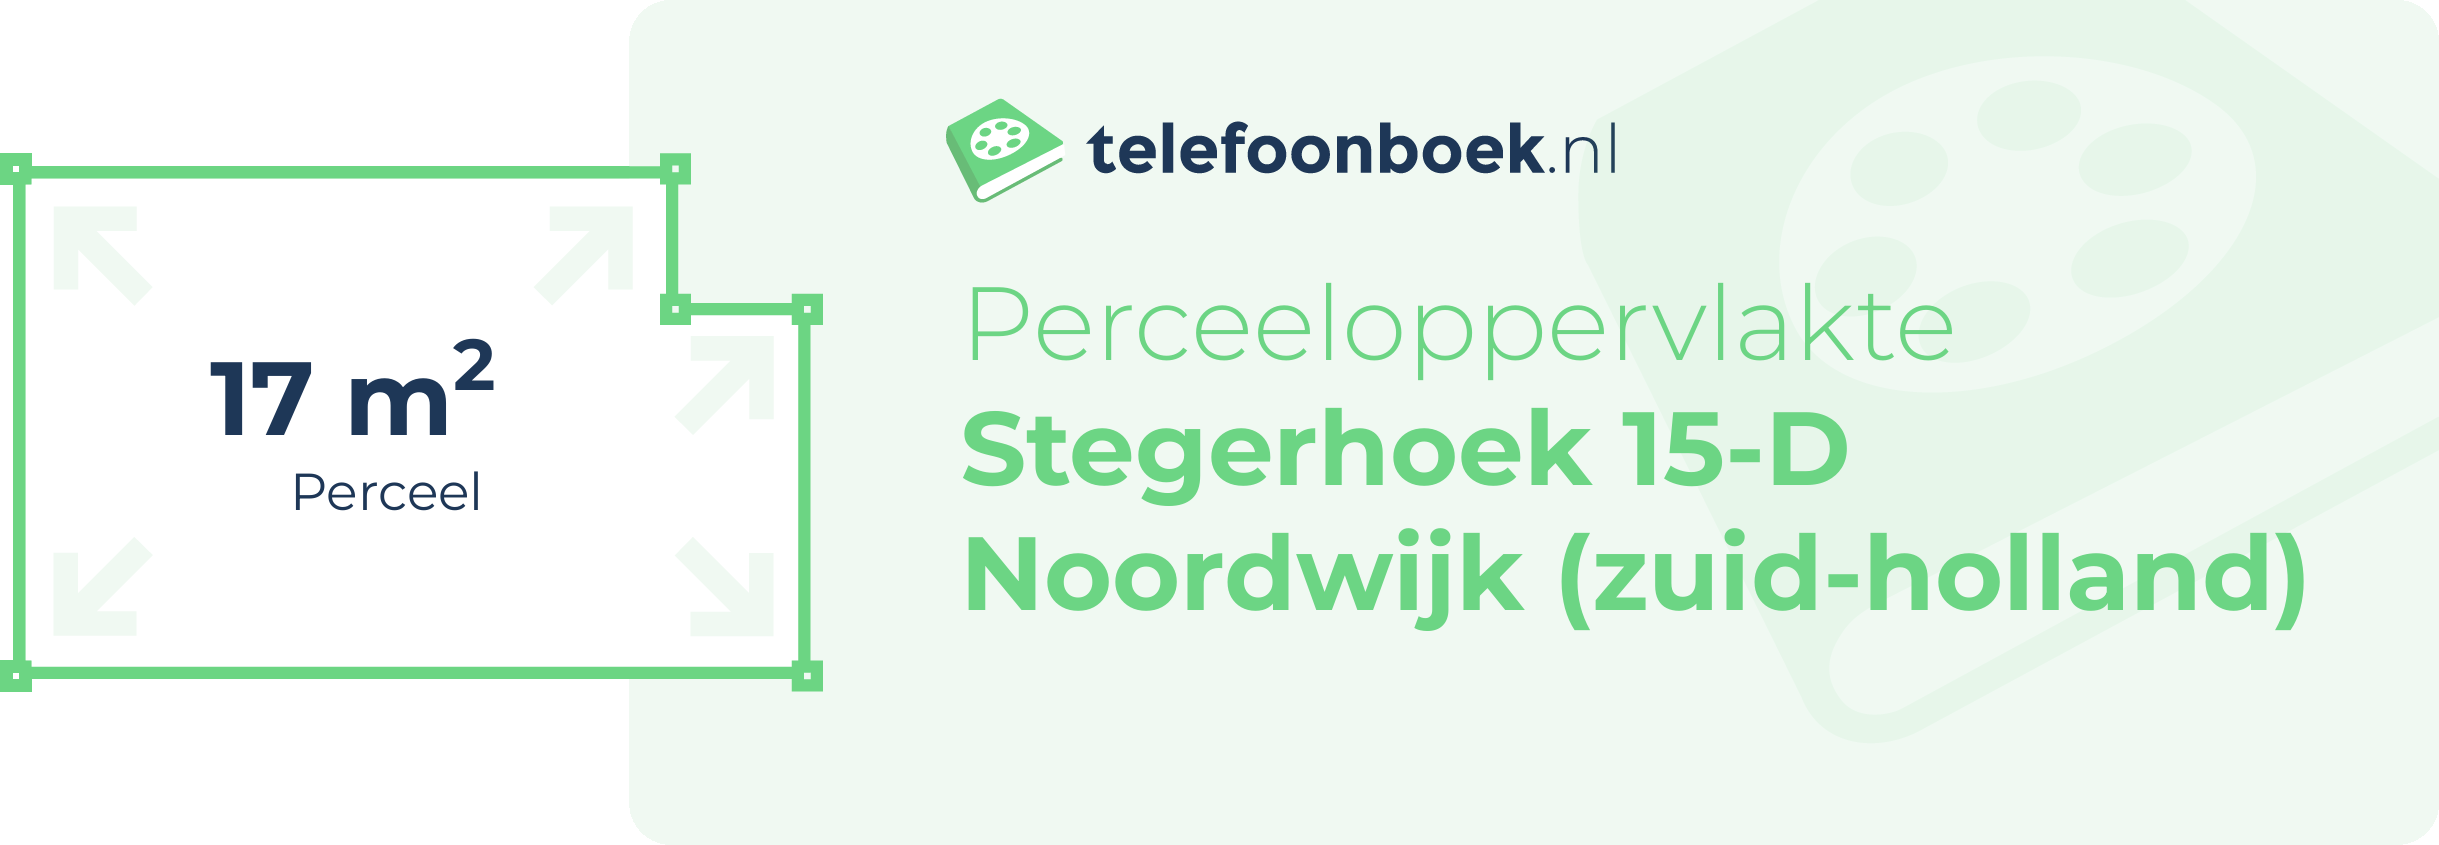 Perceeloppervlakte Stegerhoek 15-D Noordwijk (Zuid-Holland)